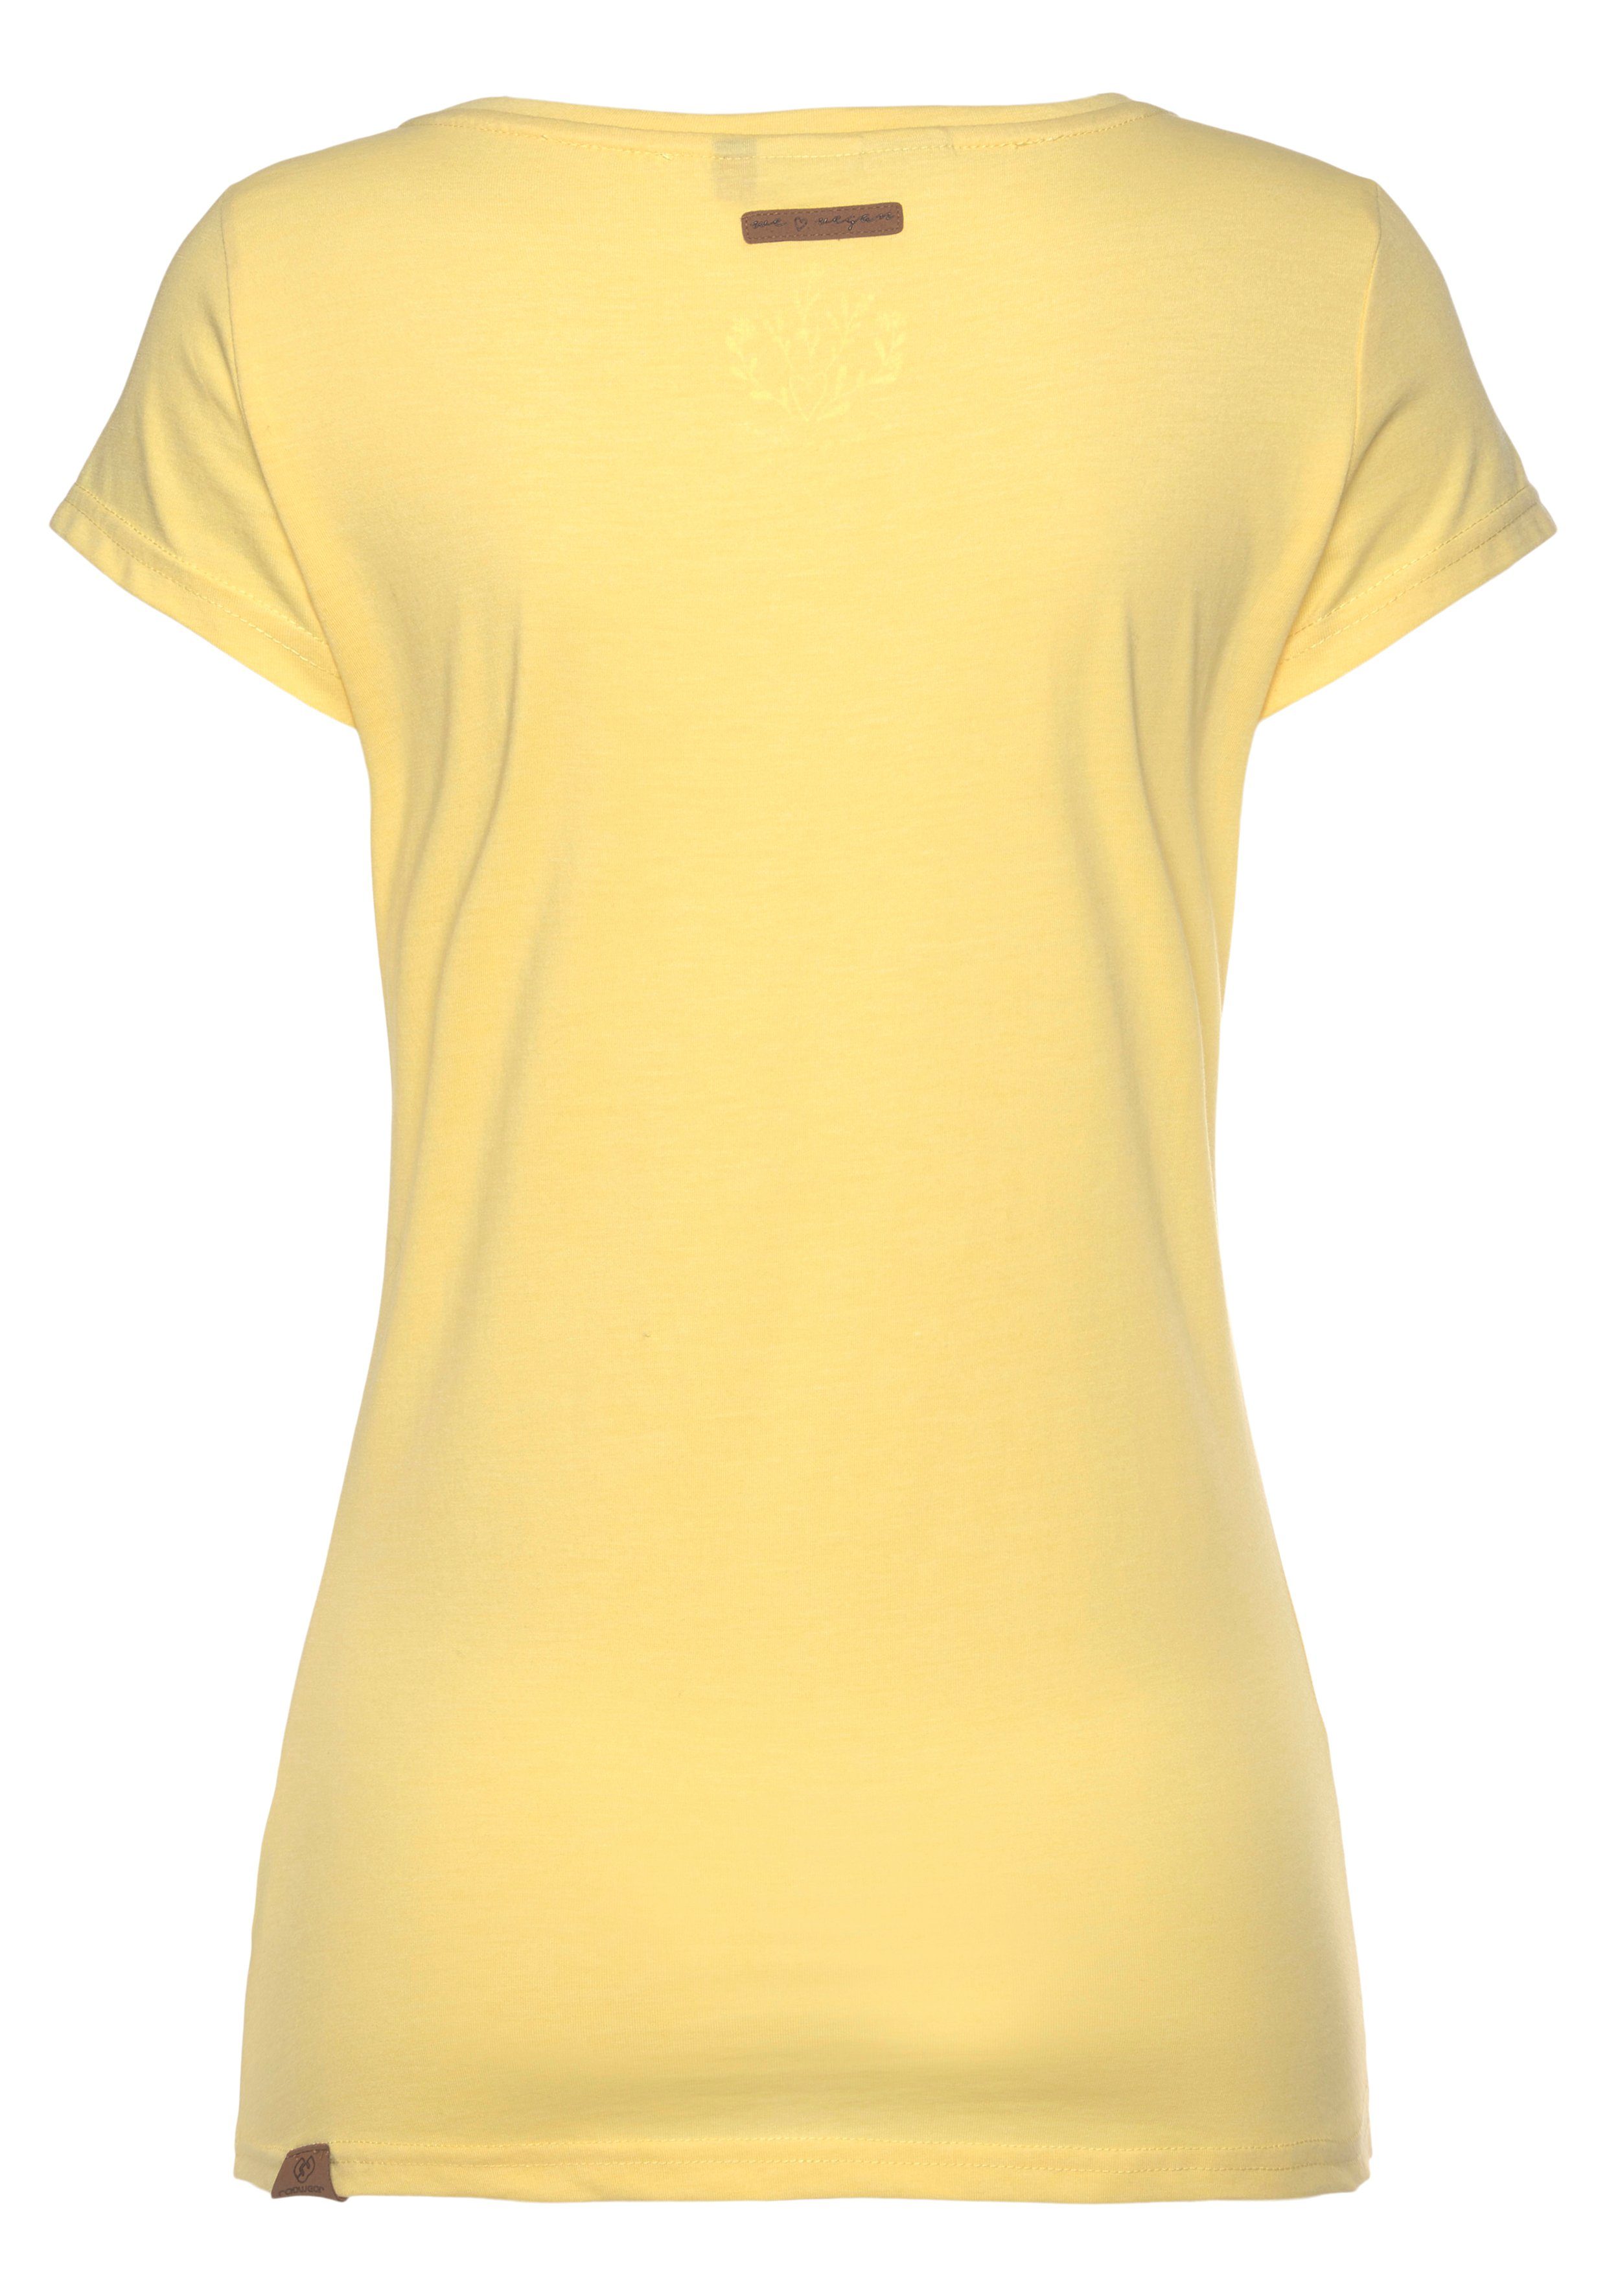 Zierknopf-Applikation MINT mit 6028 natürlicher O in yellow und T-Shirt Logoschriftzug Ragwear Holzoptik